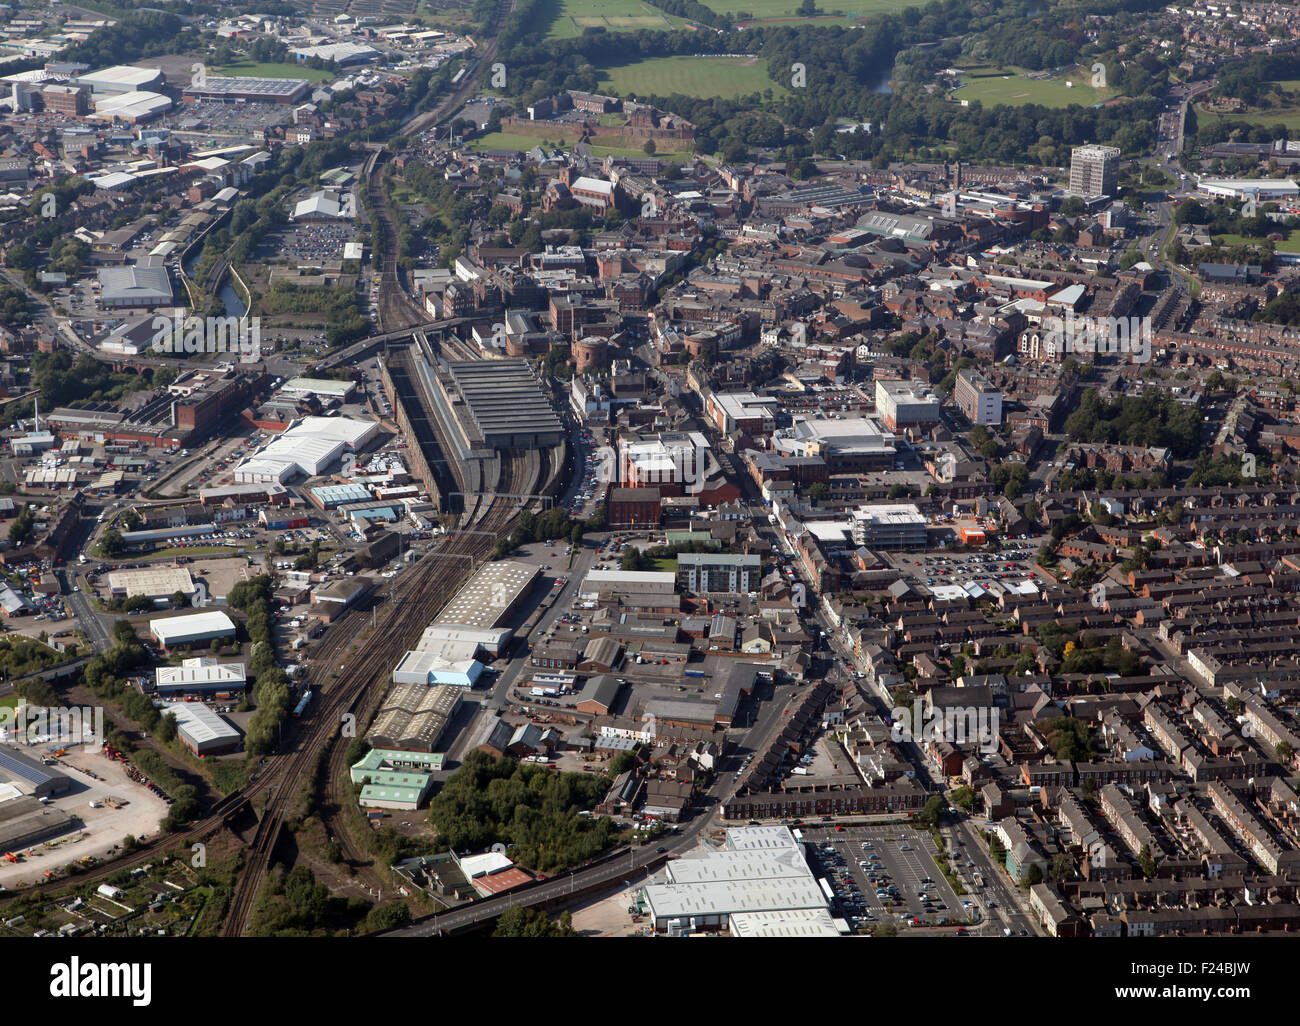 aerial view of Carlisle city centre, Cumbria, UK Stock Photo